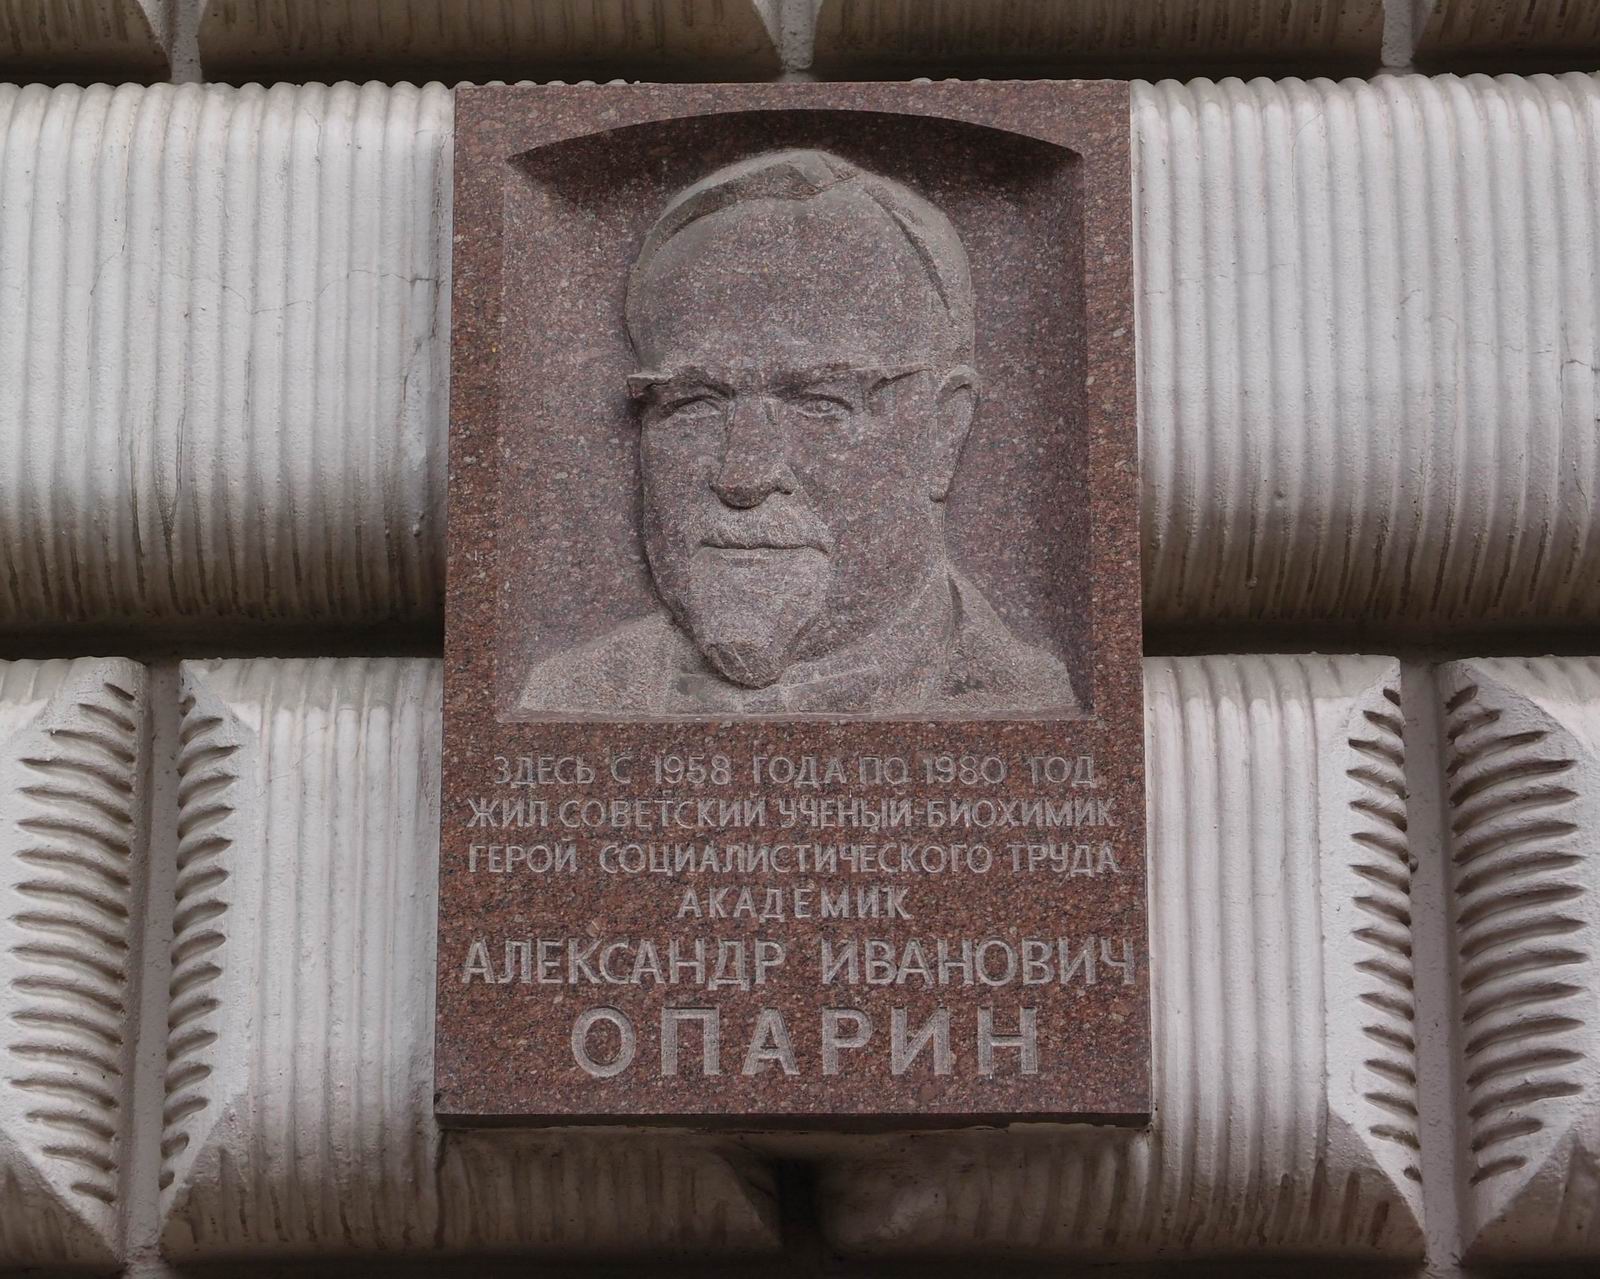 Мемориальная доска Опарину А.И. (1894–1980), ск. Ю.В.Дремин, арх. Ю.П.Кабалин, на улице Дмитрия Ульянова, дом 3, открыта 28.5.1982.